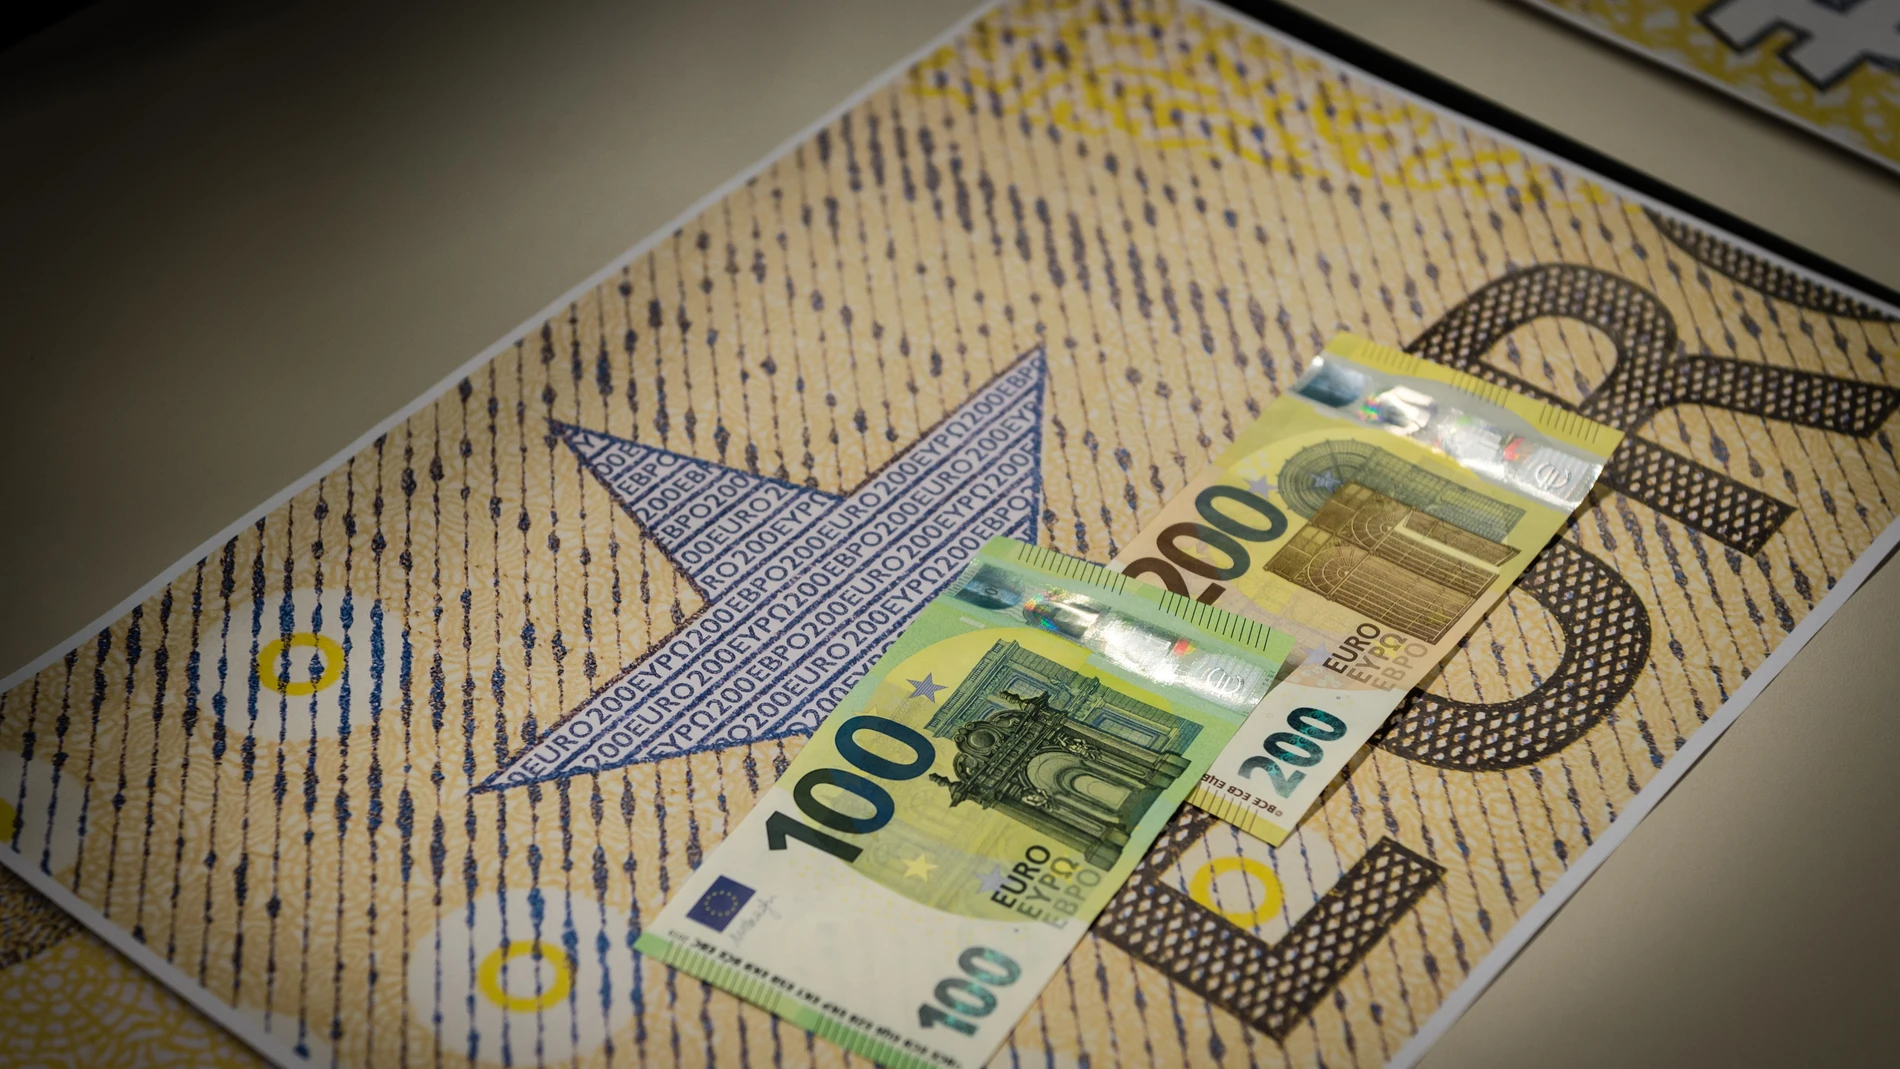 Economía/Finanzas.- La banca europea pide 45.000 millones de dólares de liquidez al BCE